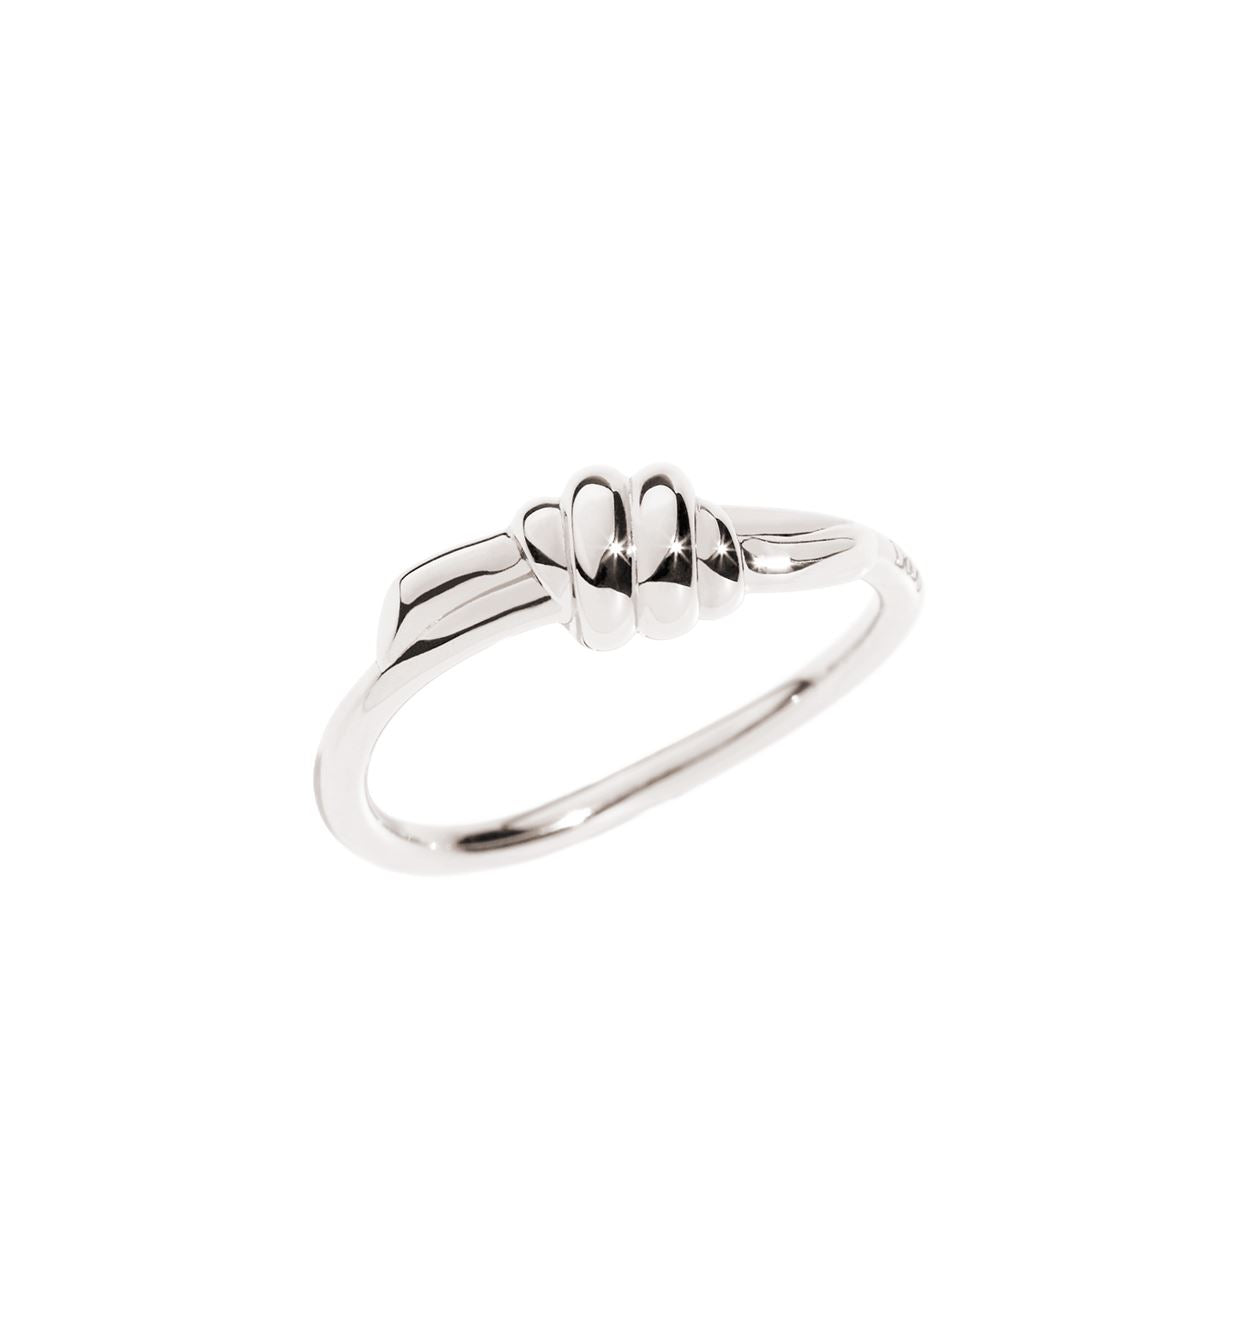 DoDo Nodo Knot Ring in Silver - Orsini Jewellers NZ